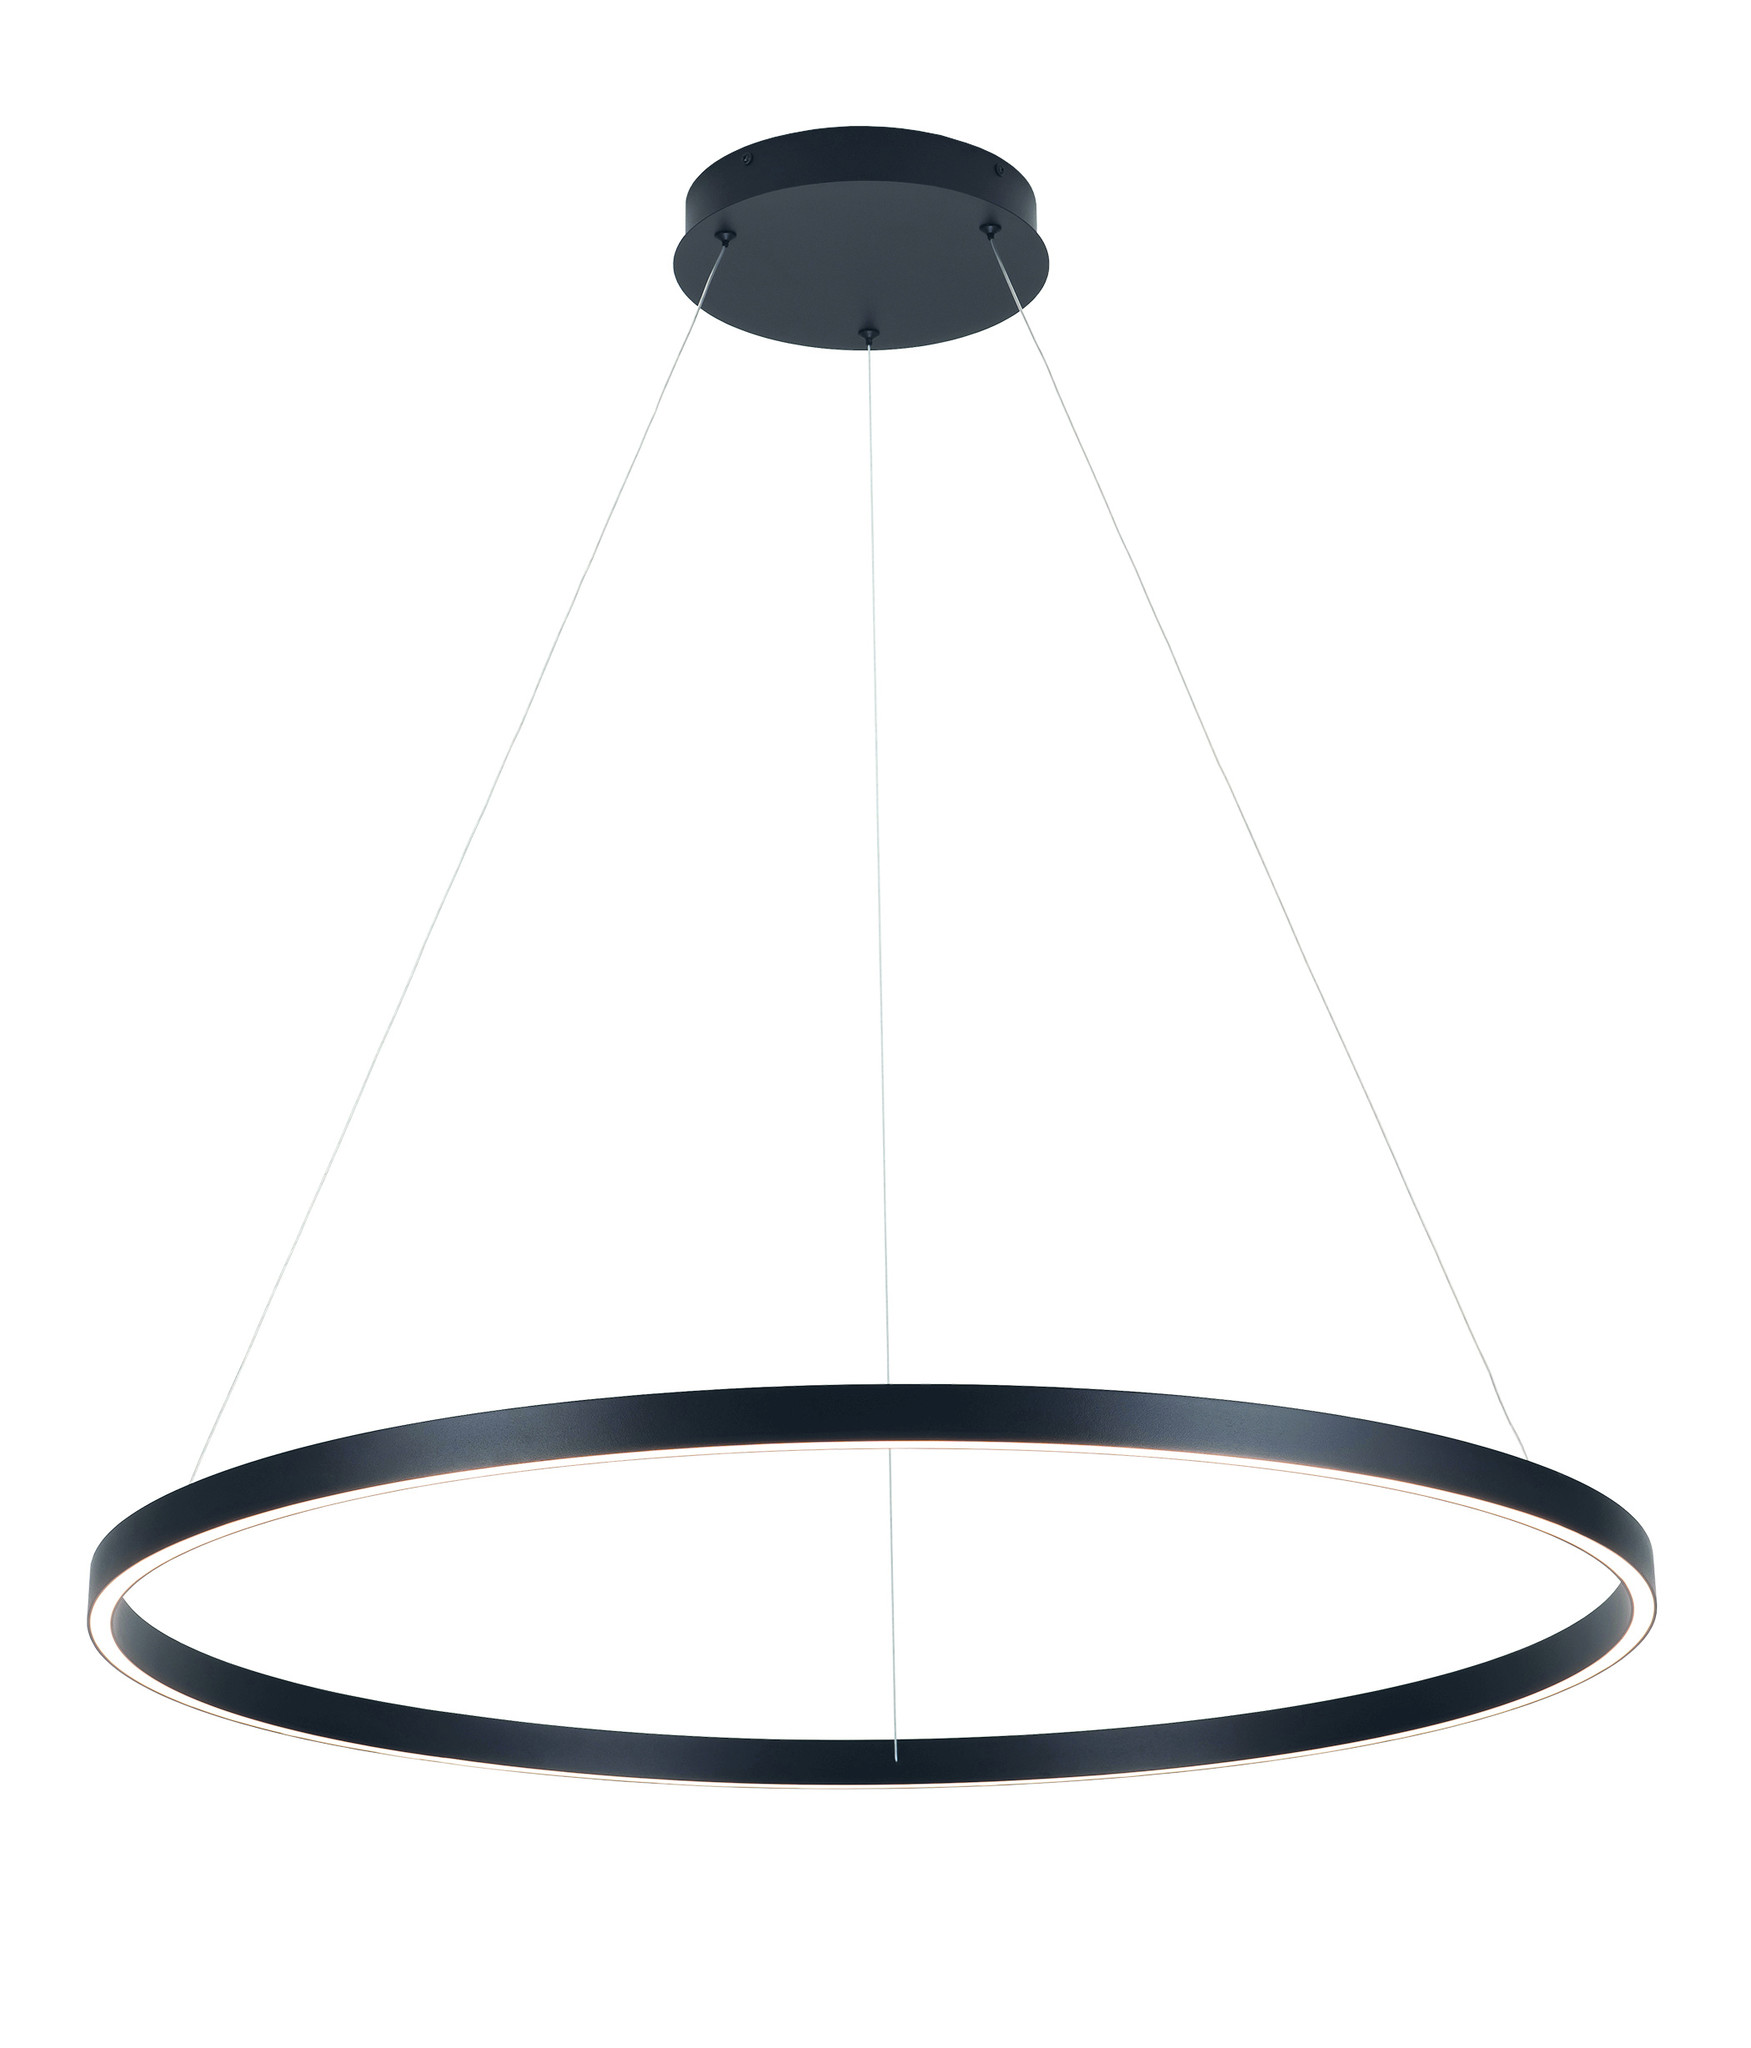 Hanglamp design rond LED zwart of wit 900mm Ø licht up en down | My Planet LED